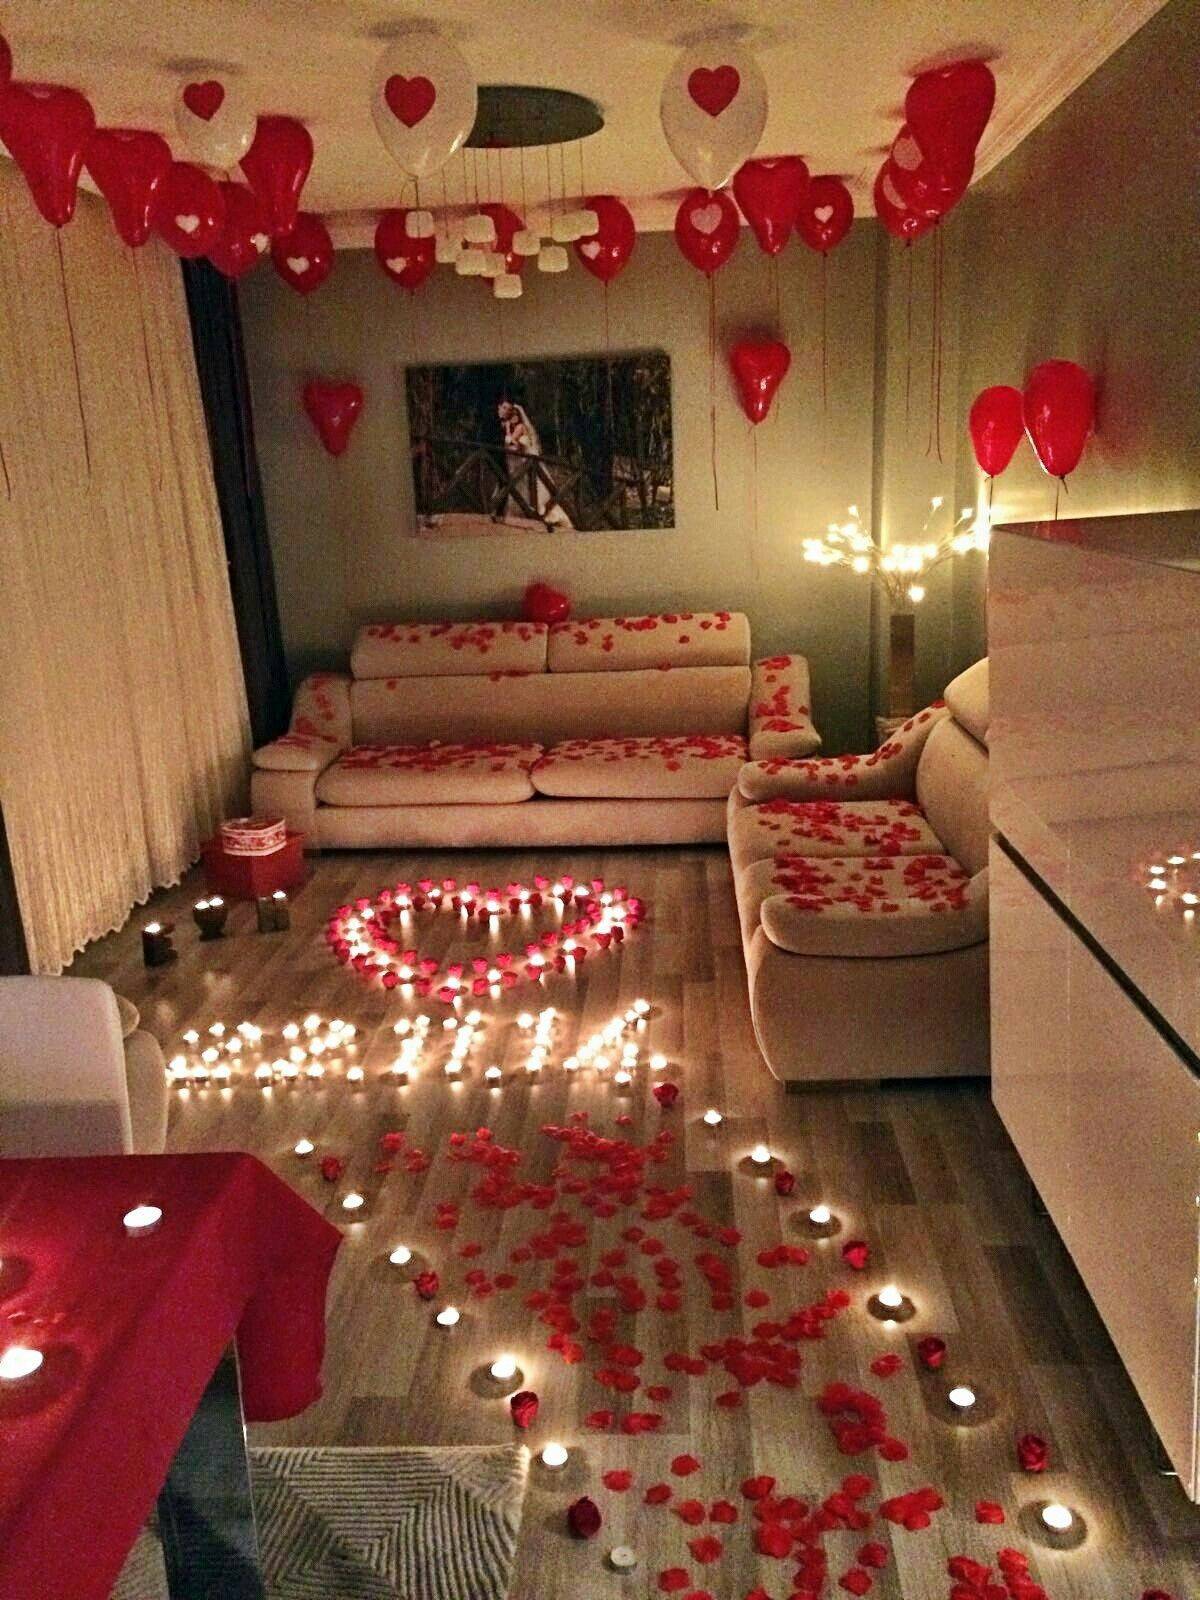 Как украсить комнату для романтического вечера (20 фото)